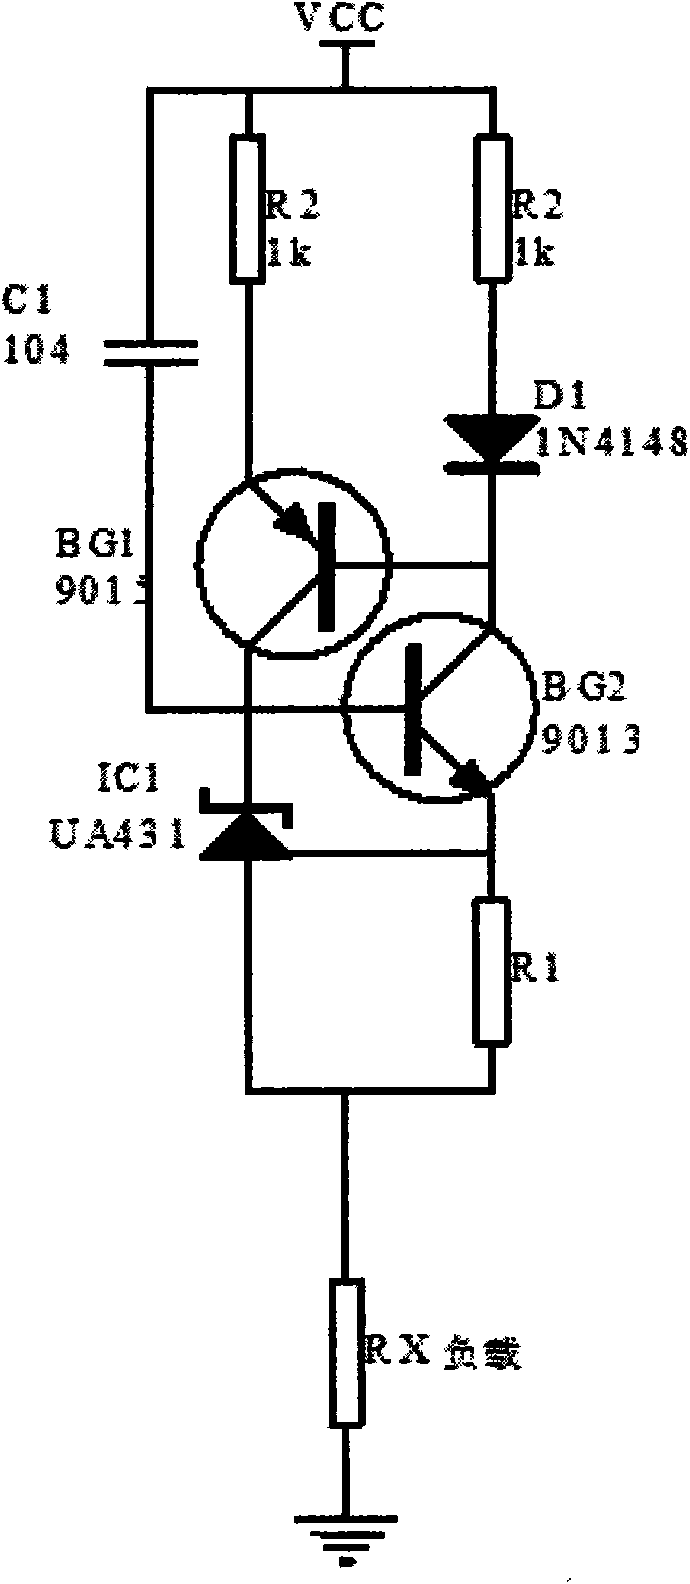 IC pin open short circuit test method